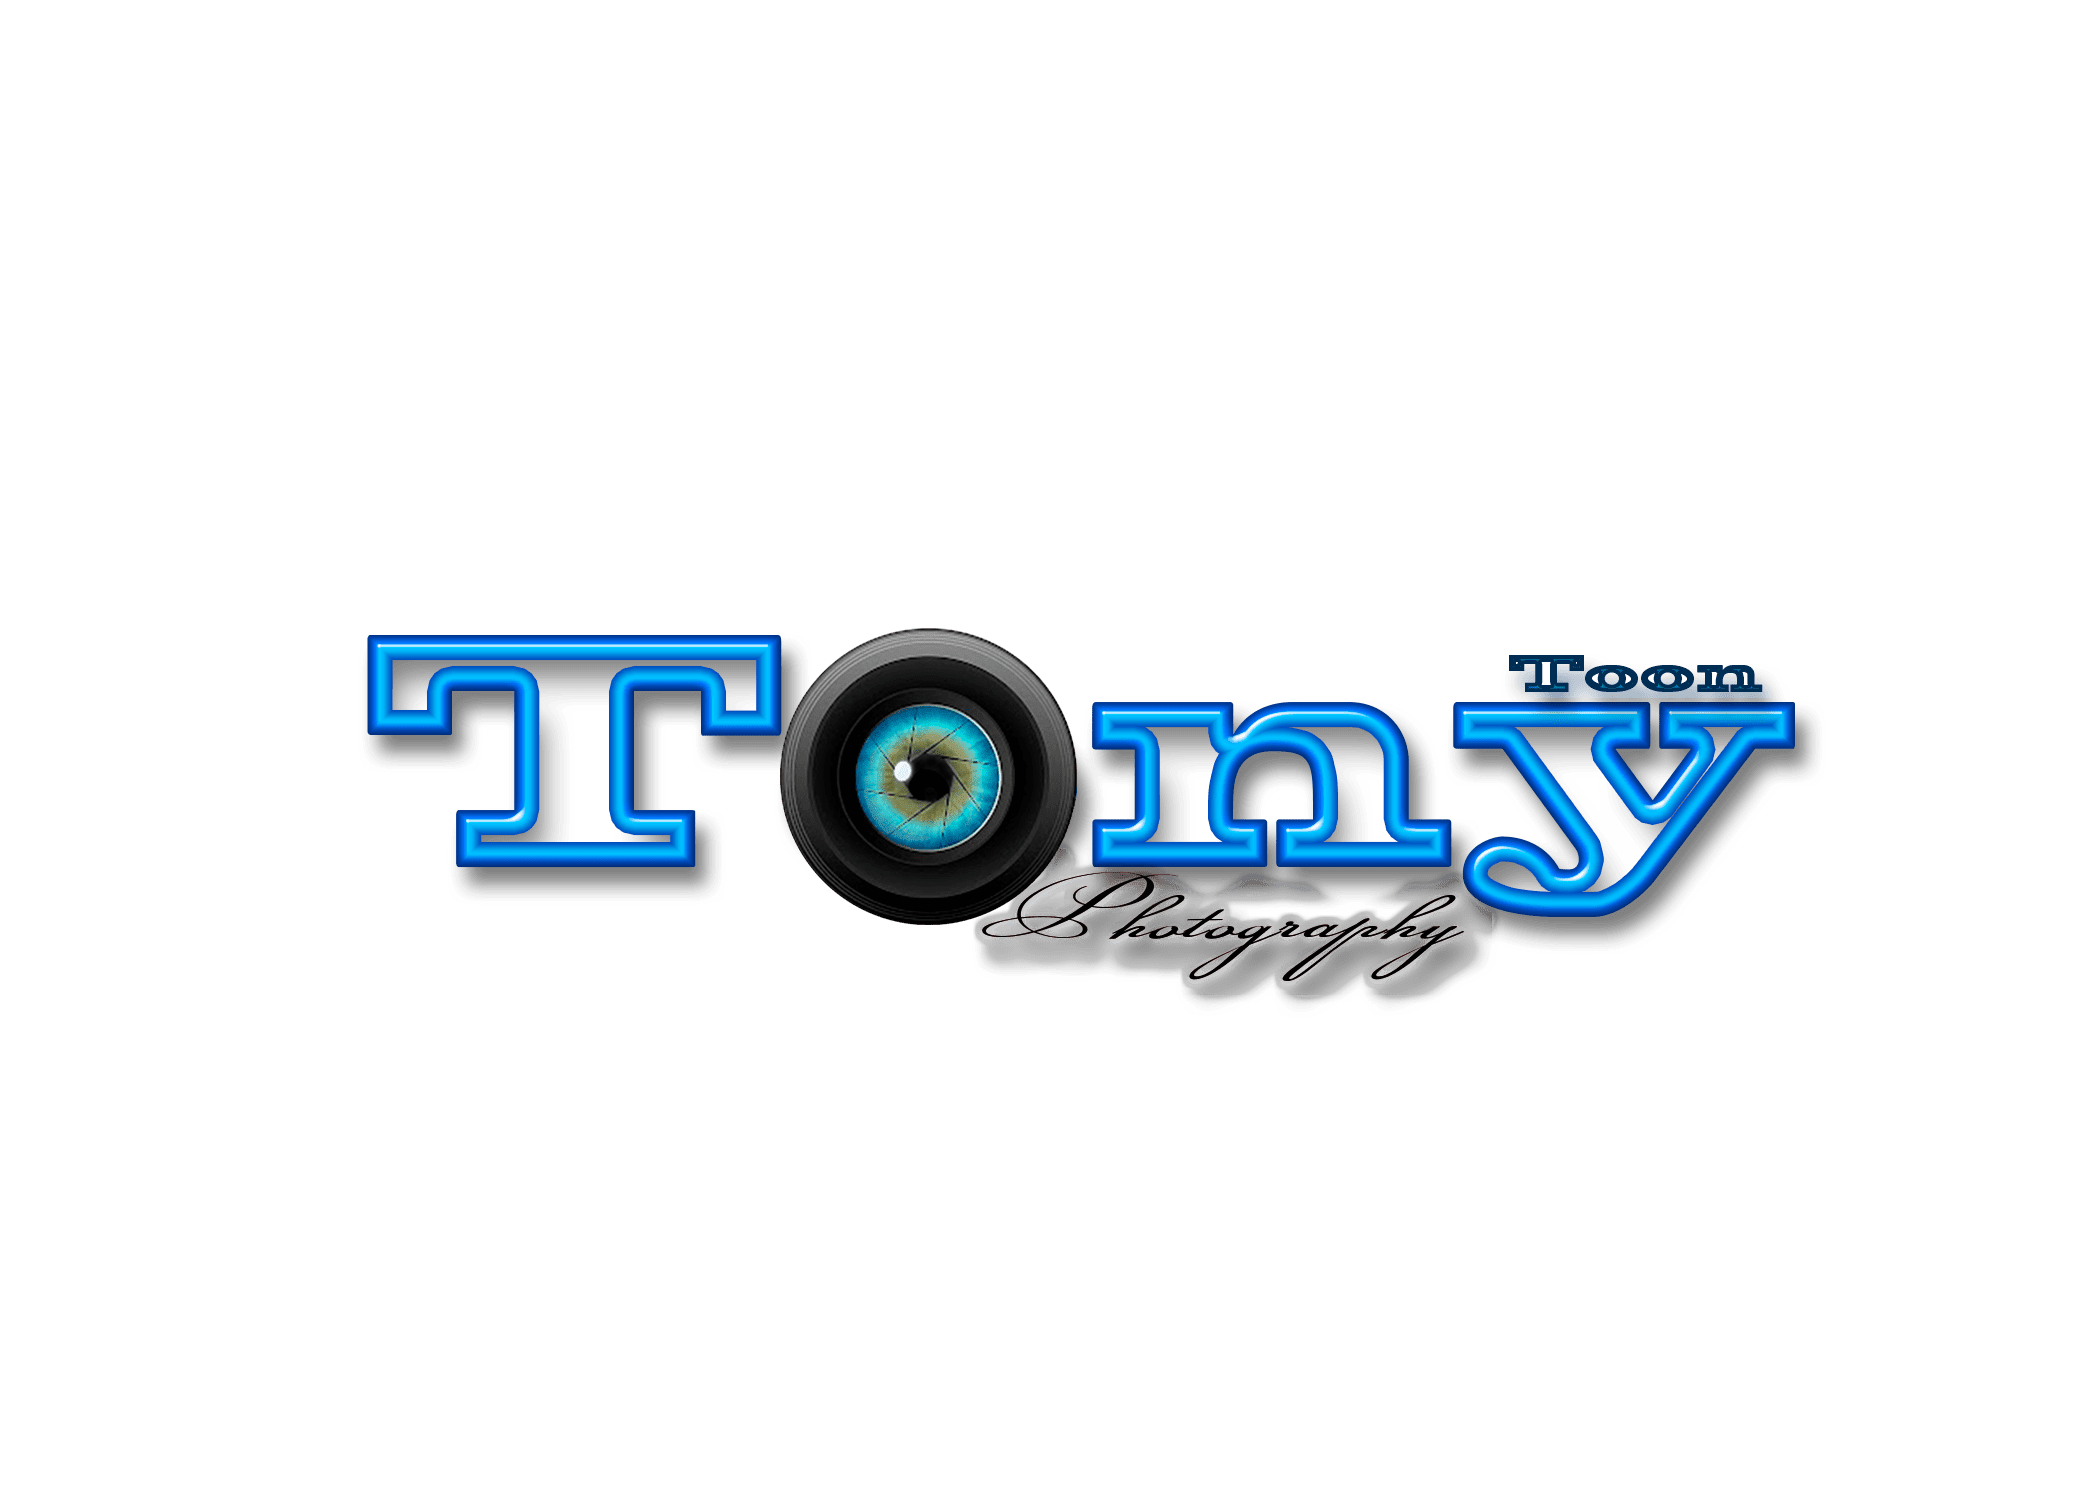 Tony Toon Films